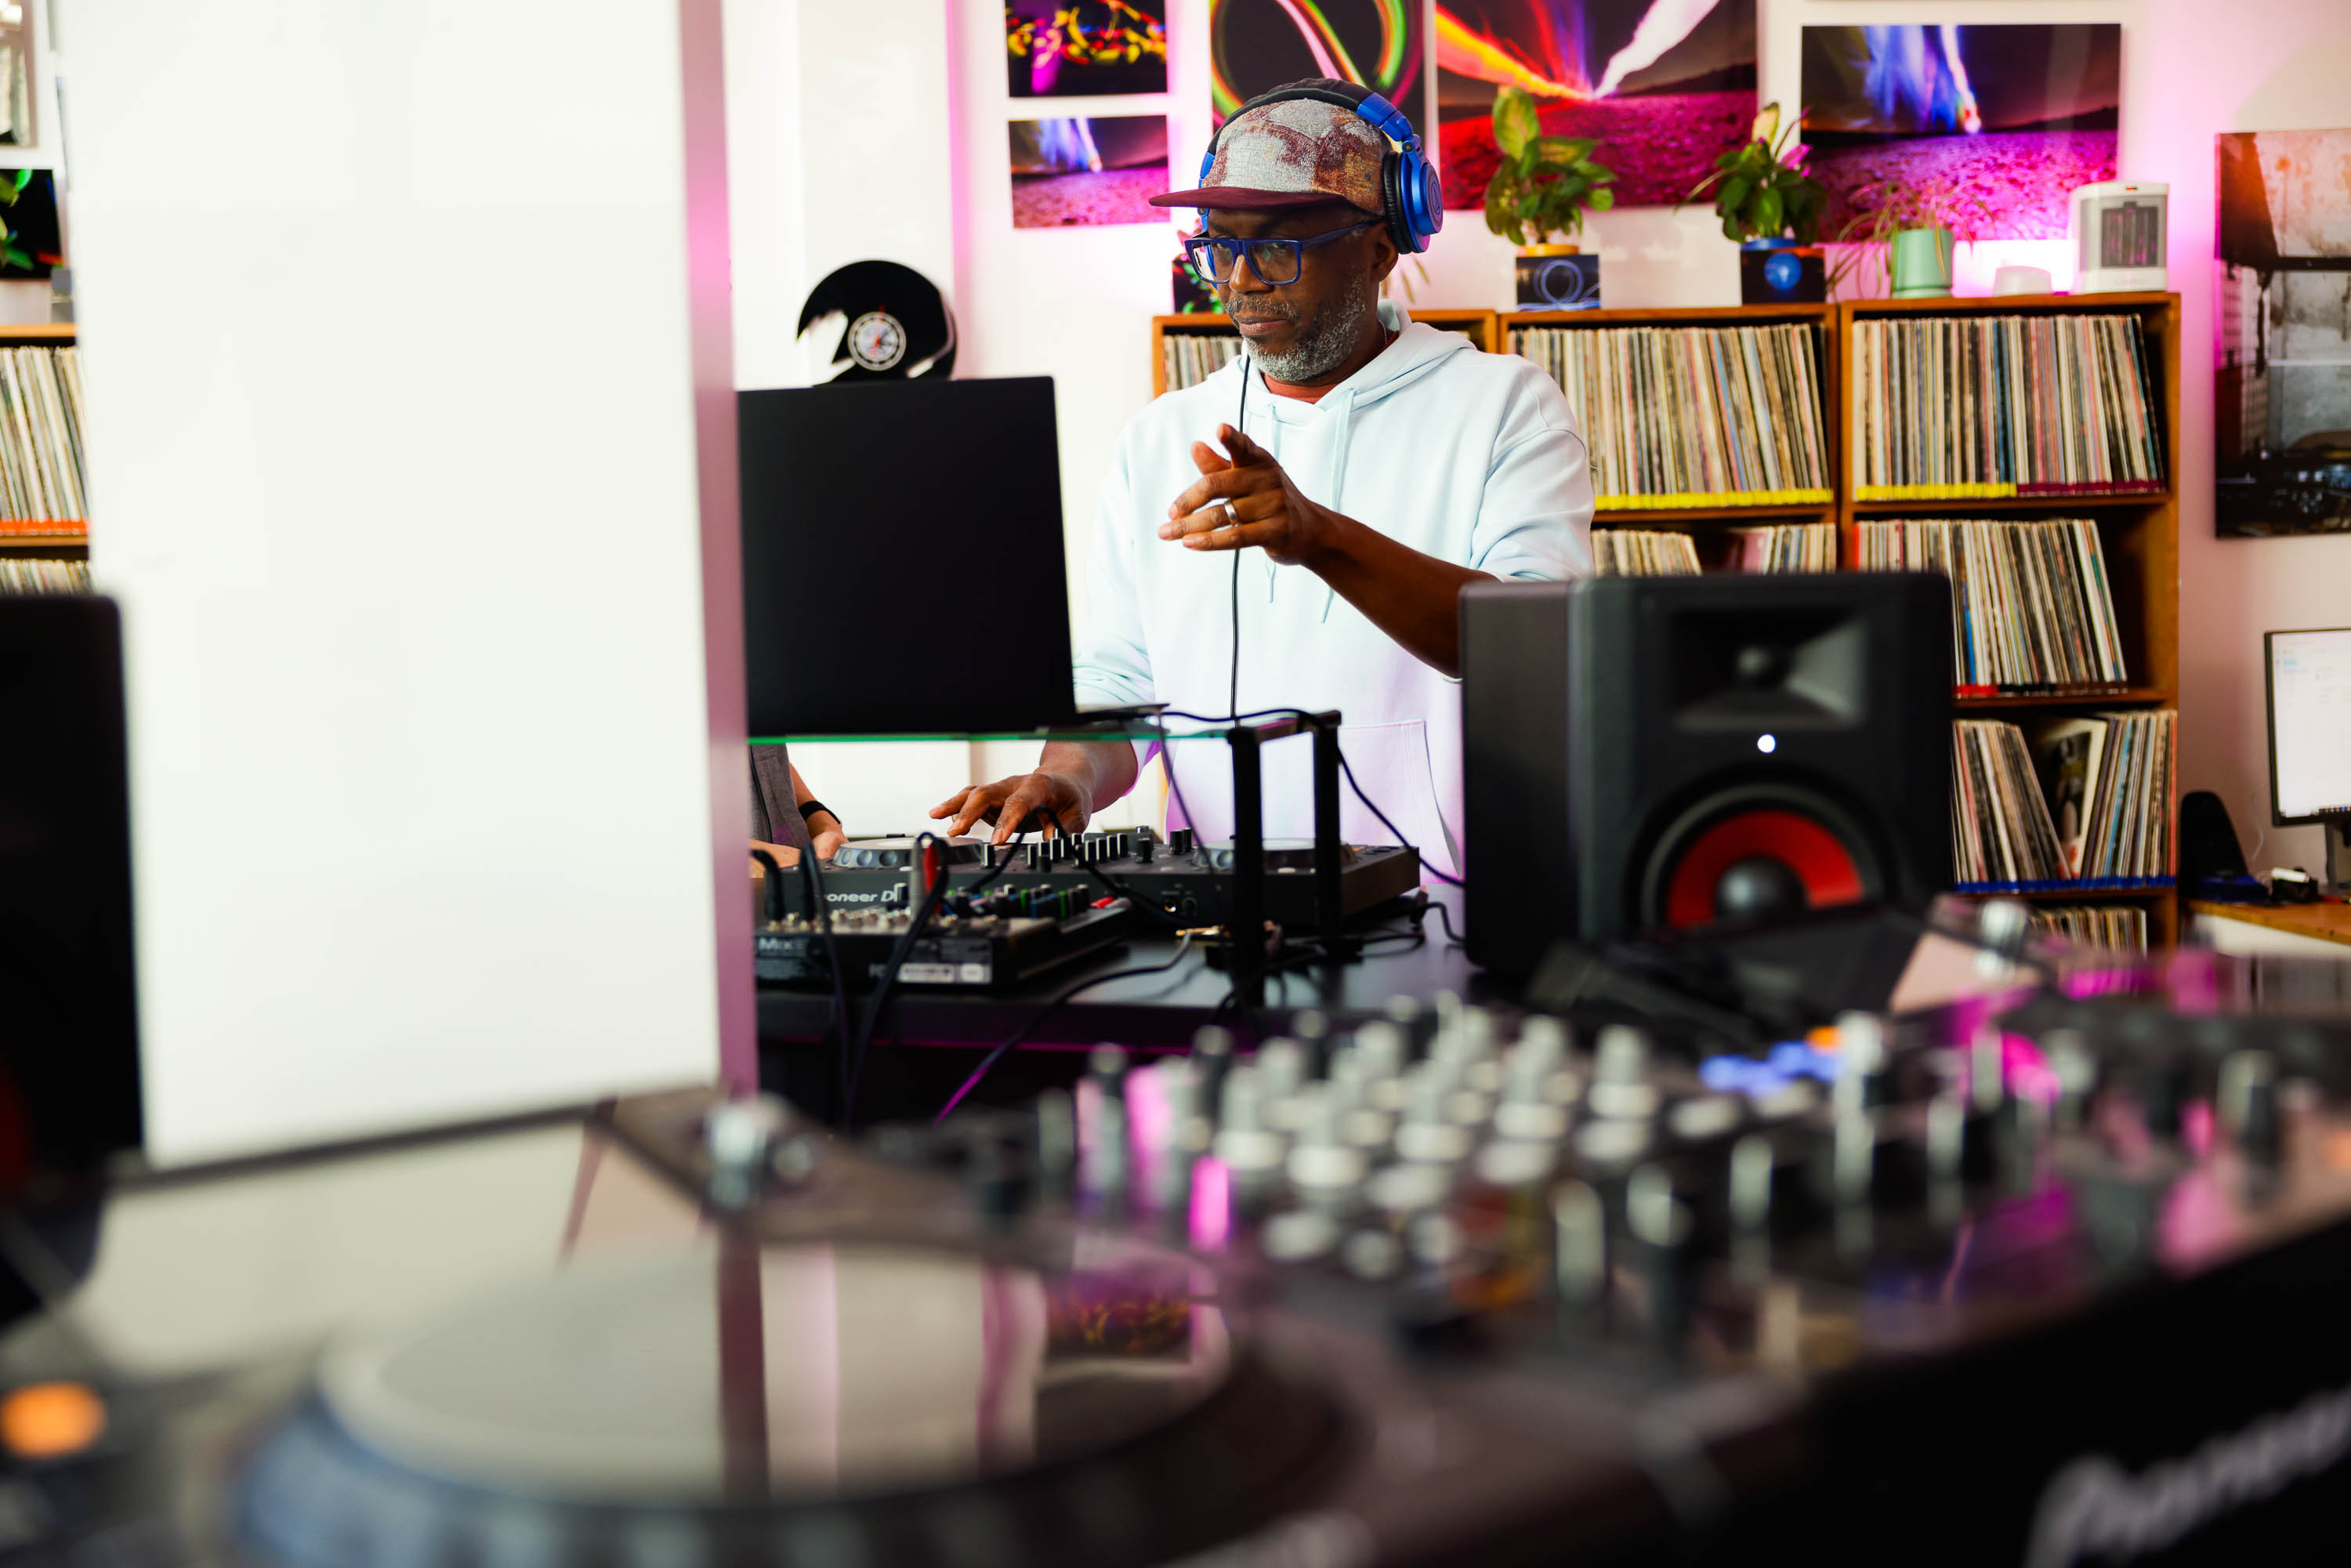 A DJ in a cap and headphones mixes tracks amidst a room full of vinyl records.